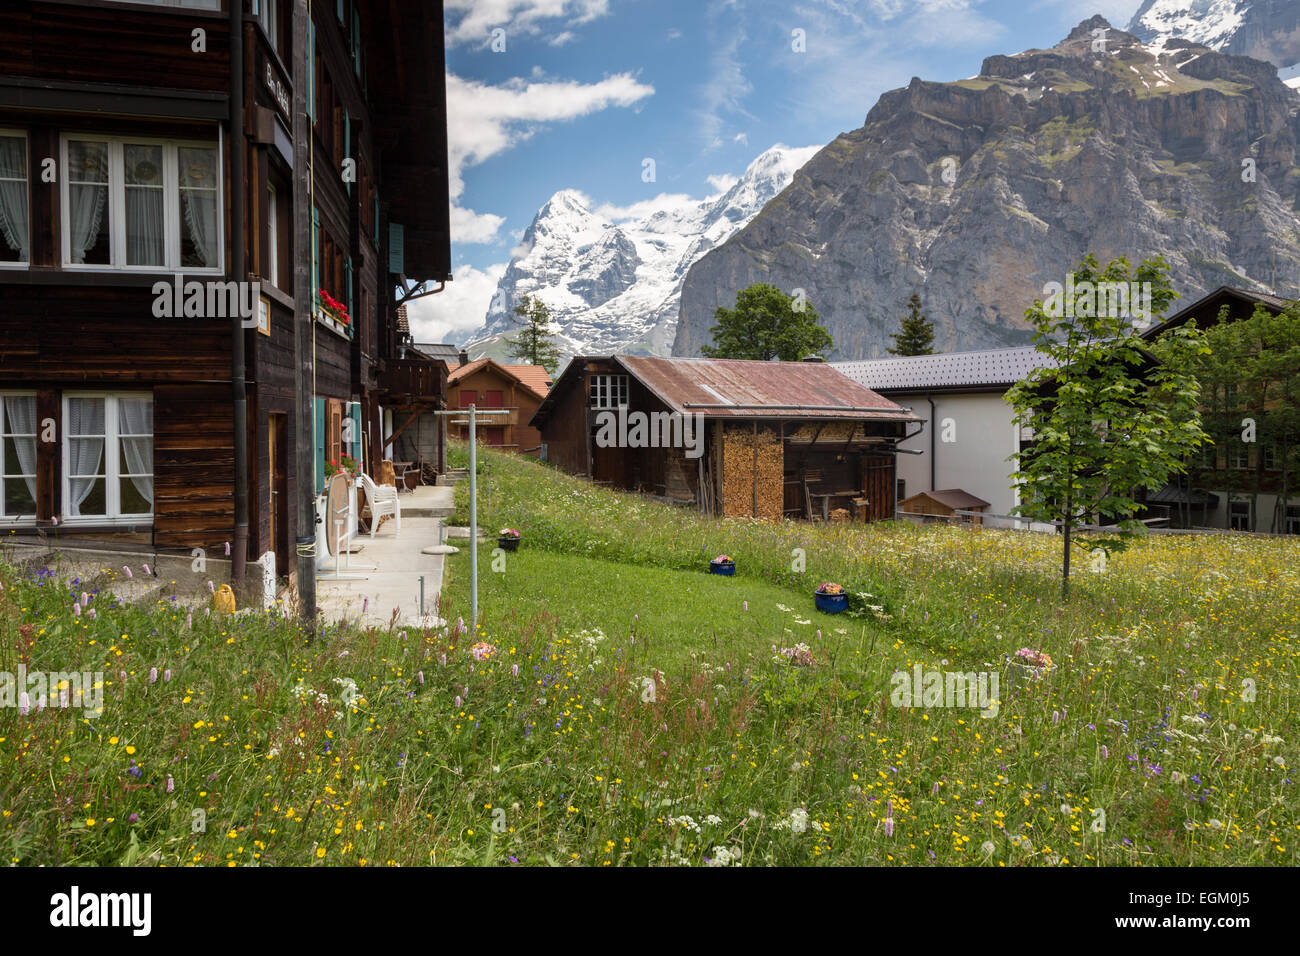 Einen malerischen Blick auf die Berge und Häuser im alpinen Dorf Mürren, Schweiz. Stockfoto